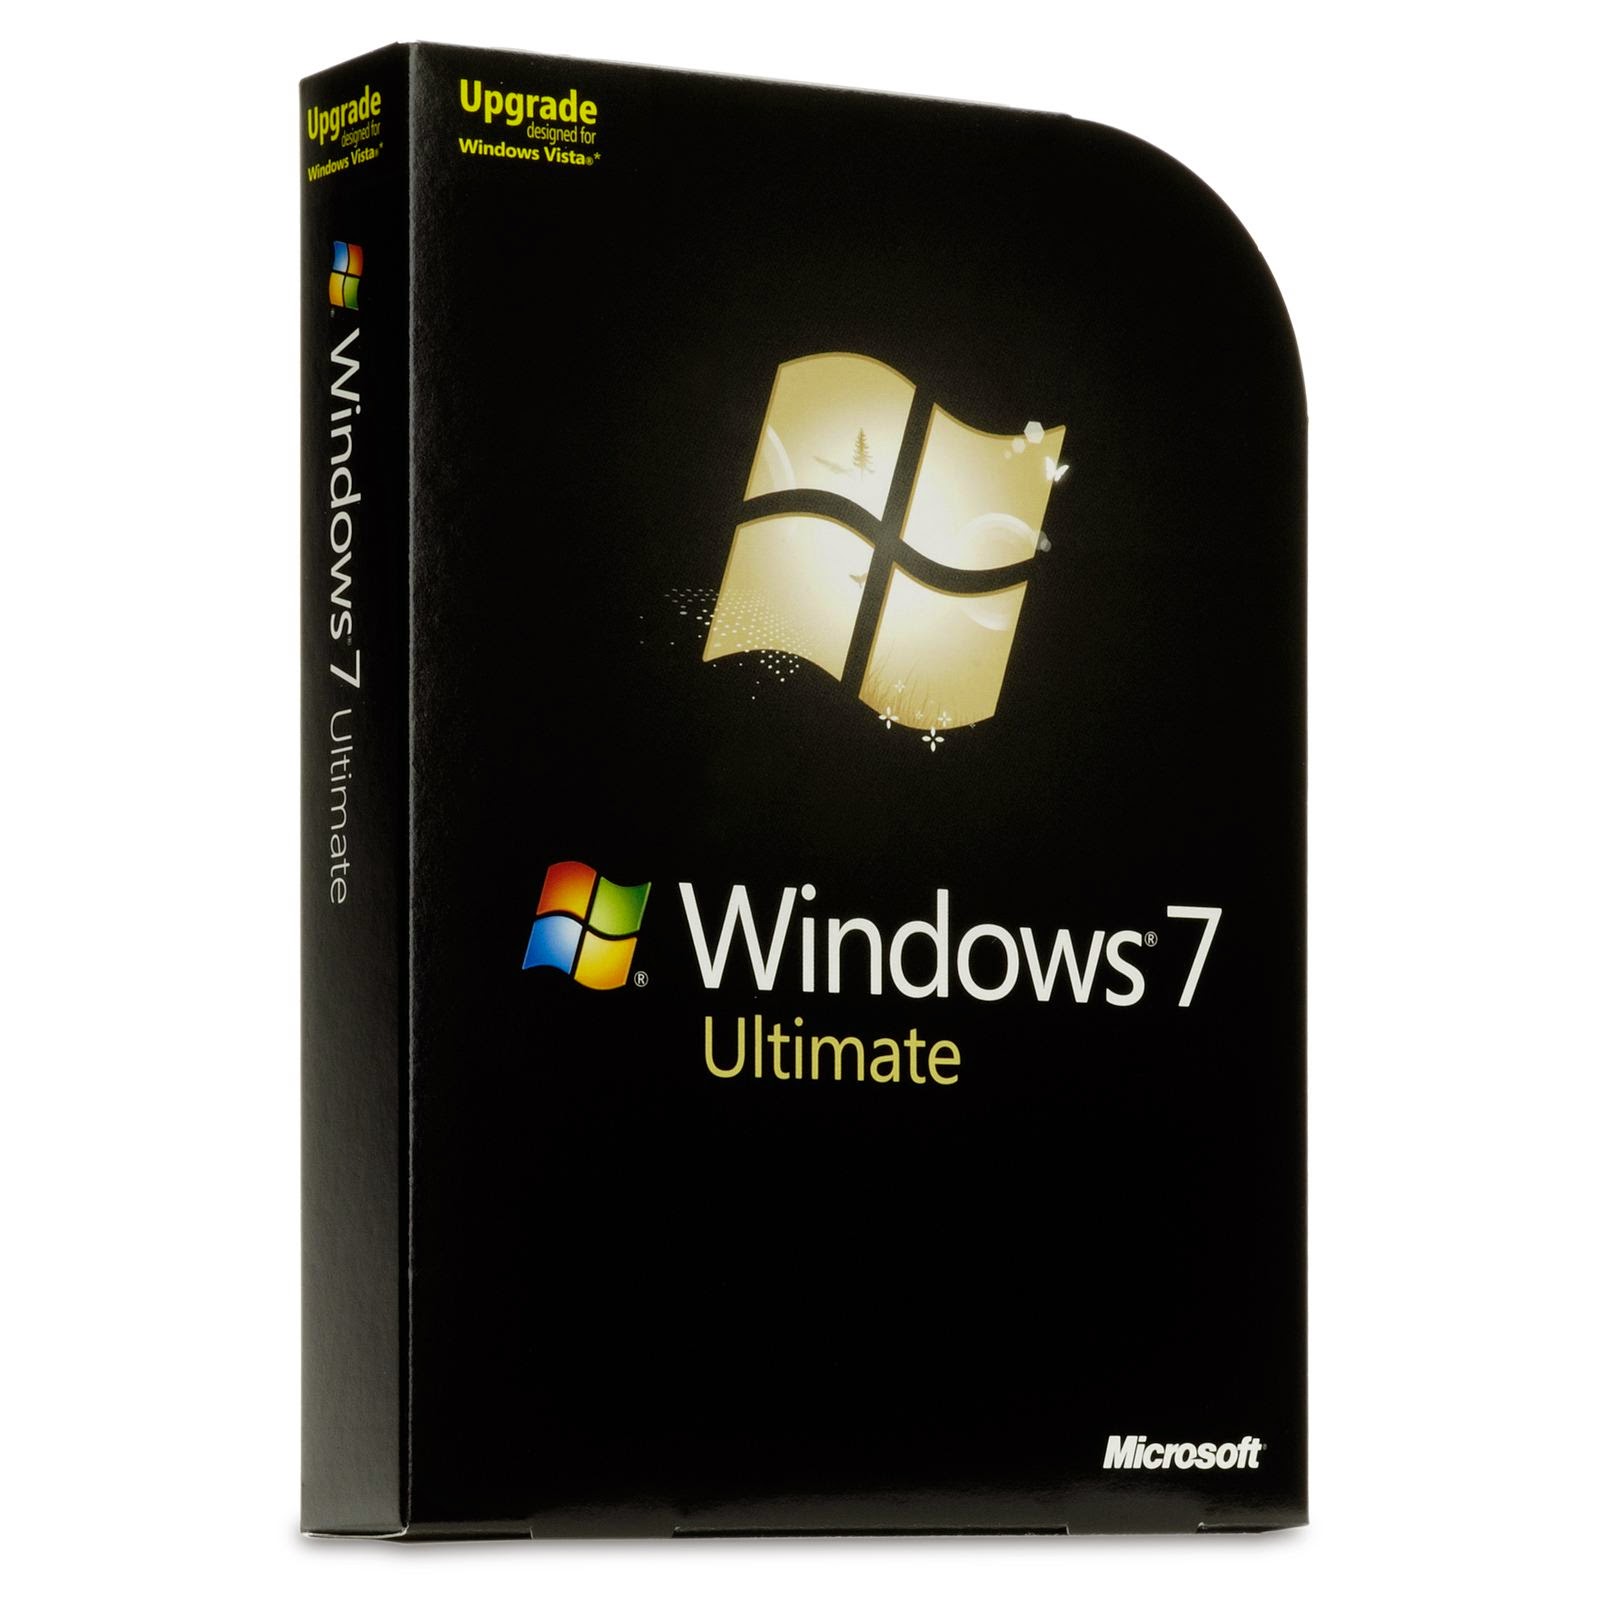 Коробочная версия купить. Коробка Windows 7 Ultimate. Windows 7 максимальная Ultimate. ОС виндовс 7 максимальная. Операционная система Microsoft Windows 7.